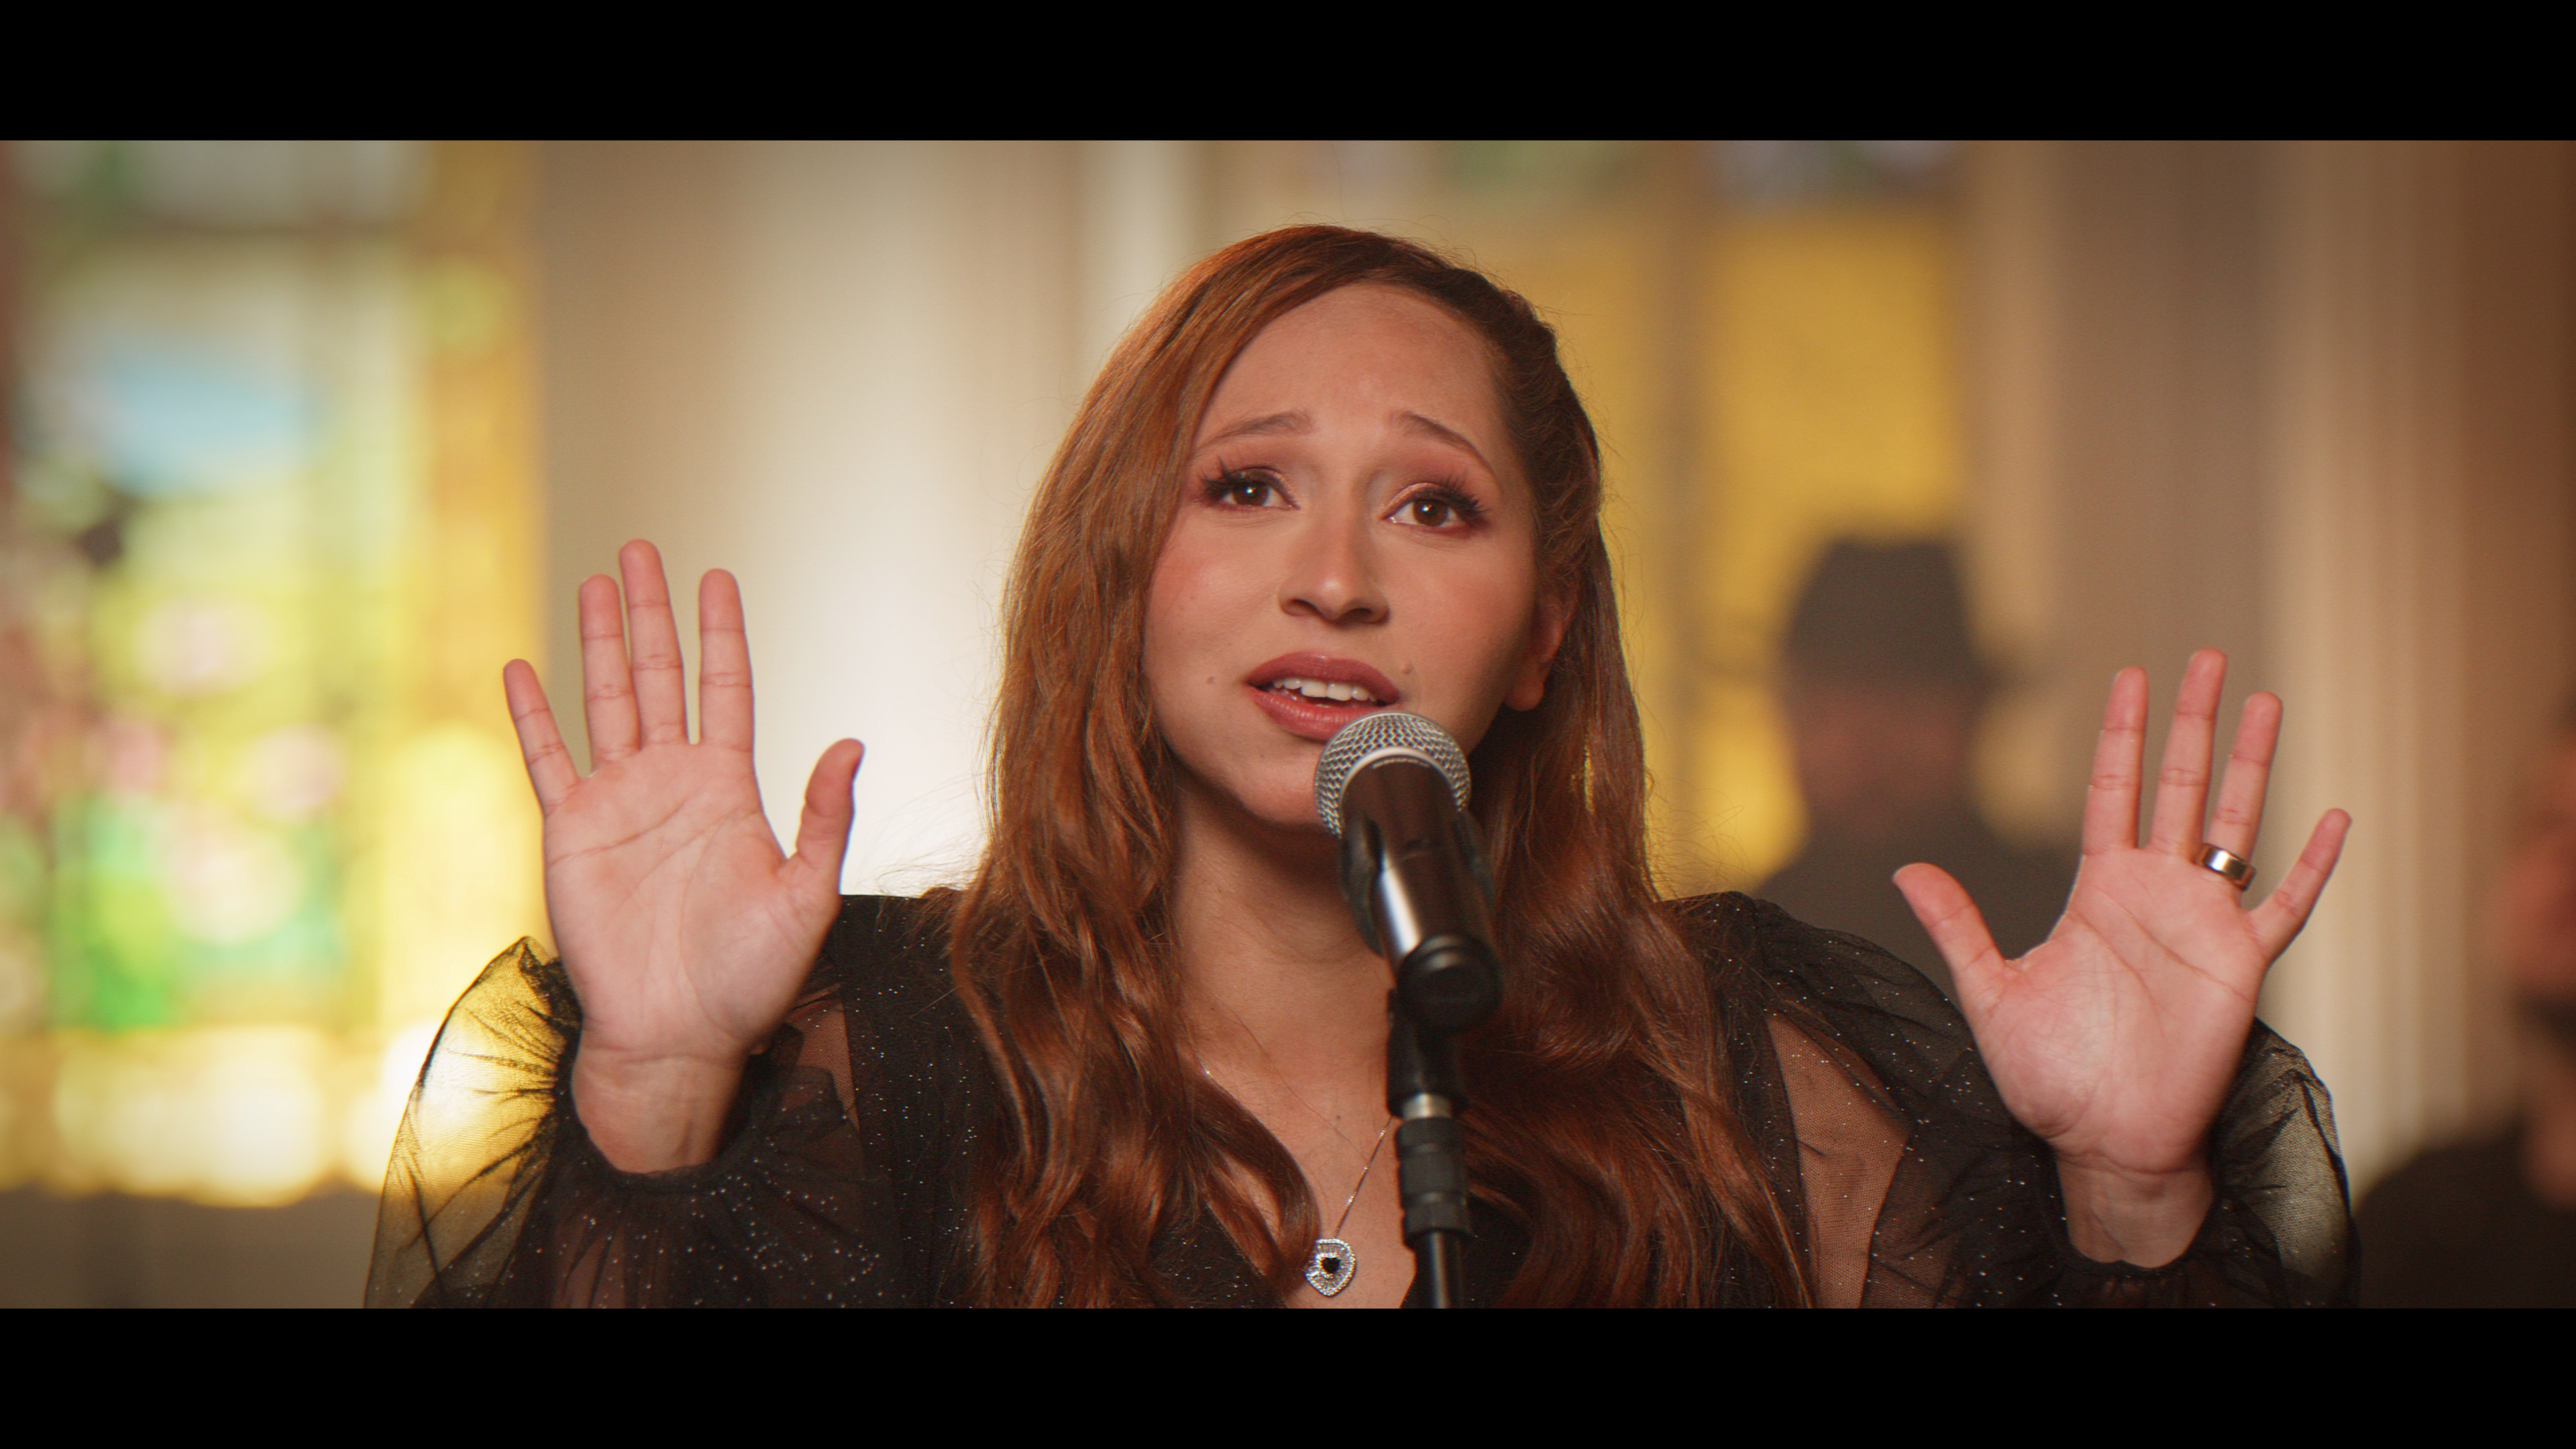 Alexsandra Teixeira em “Reconstruir”, uma canção sobre a fé que cura e liberta